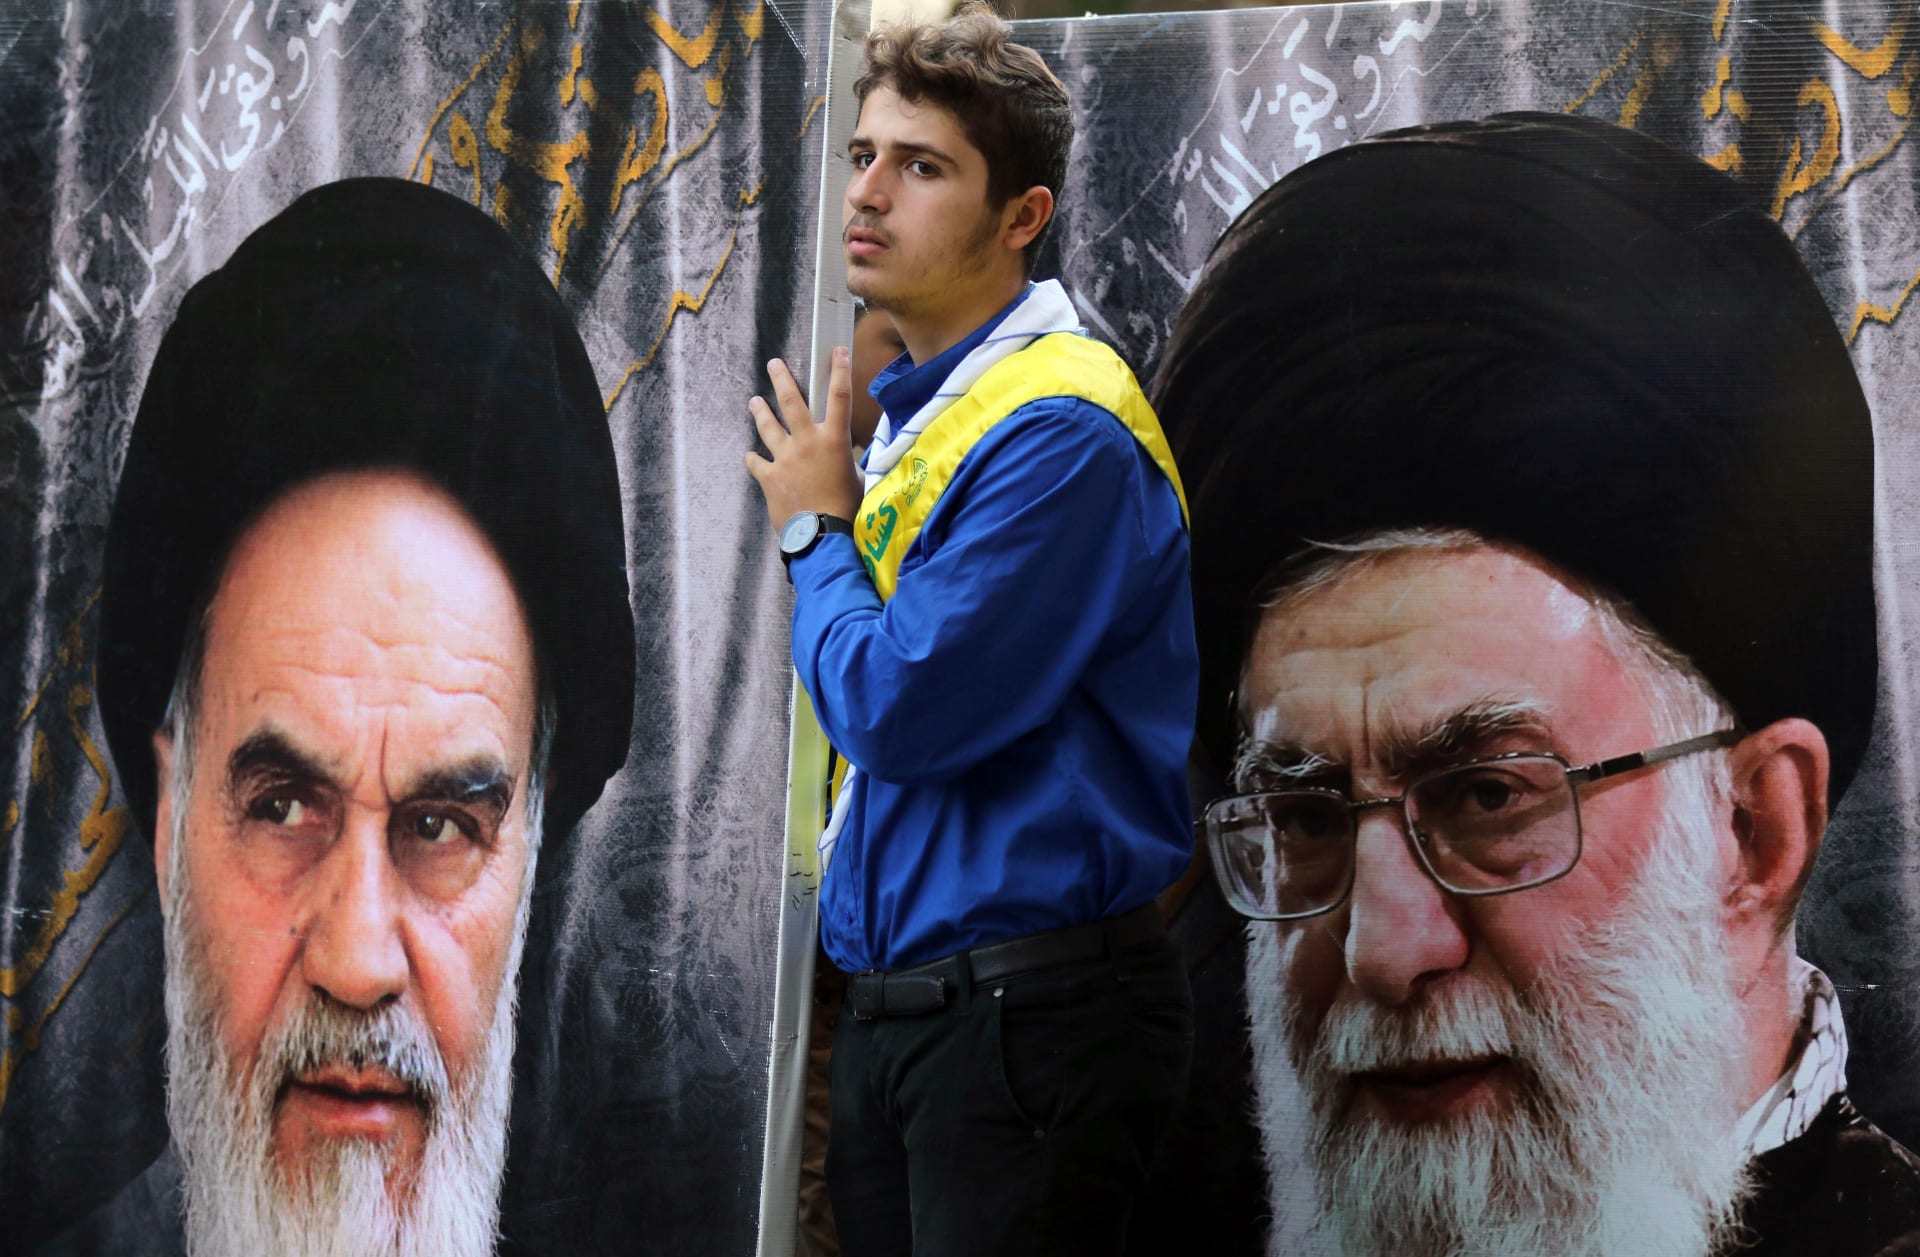 إيران: 21 قتيلا بالاحتجاجات وخامنئي يتهم "الأعداء" بالتحالف